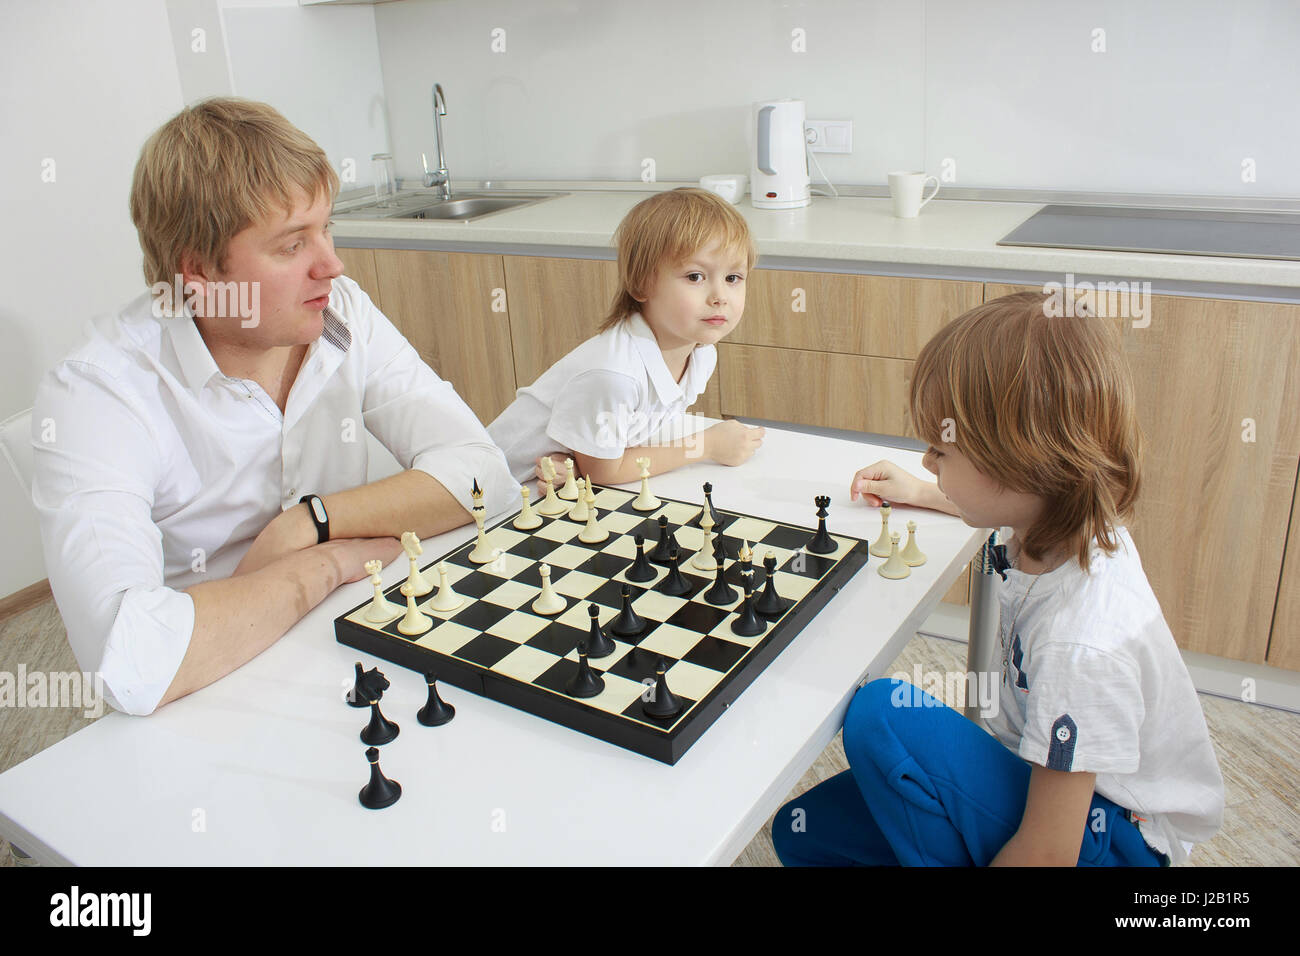 Famille en jouant aux échecs sur une table à la maison Banque D'Images